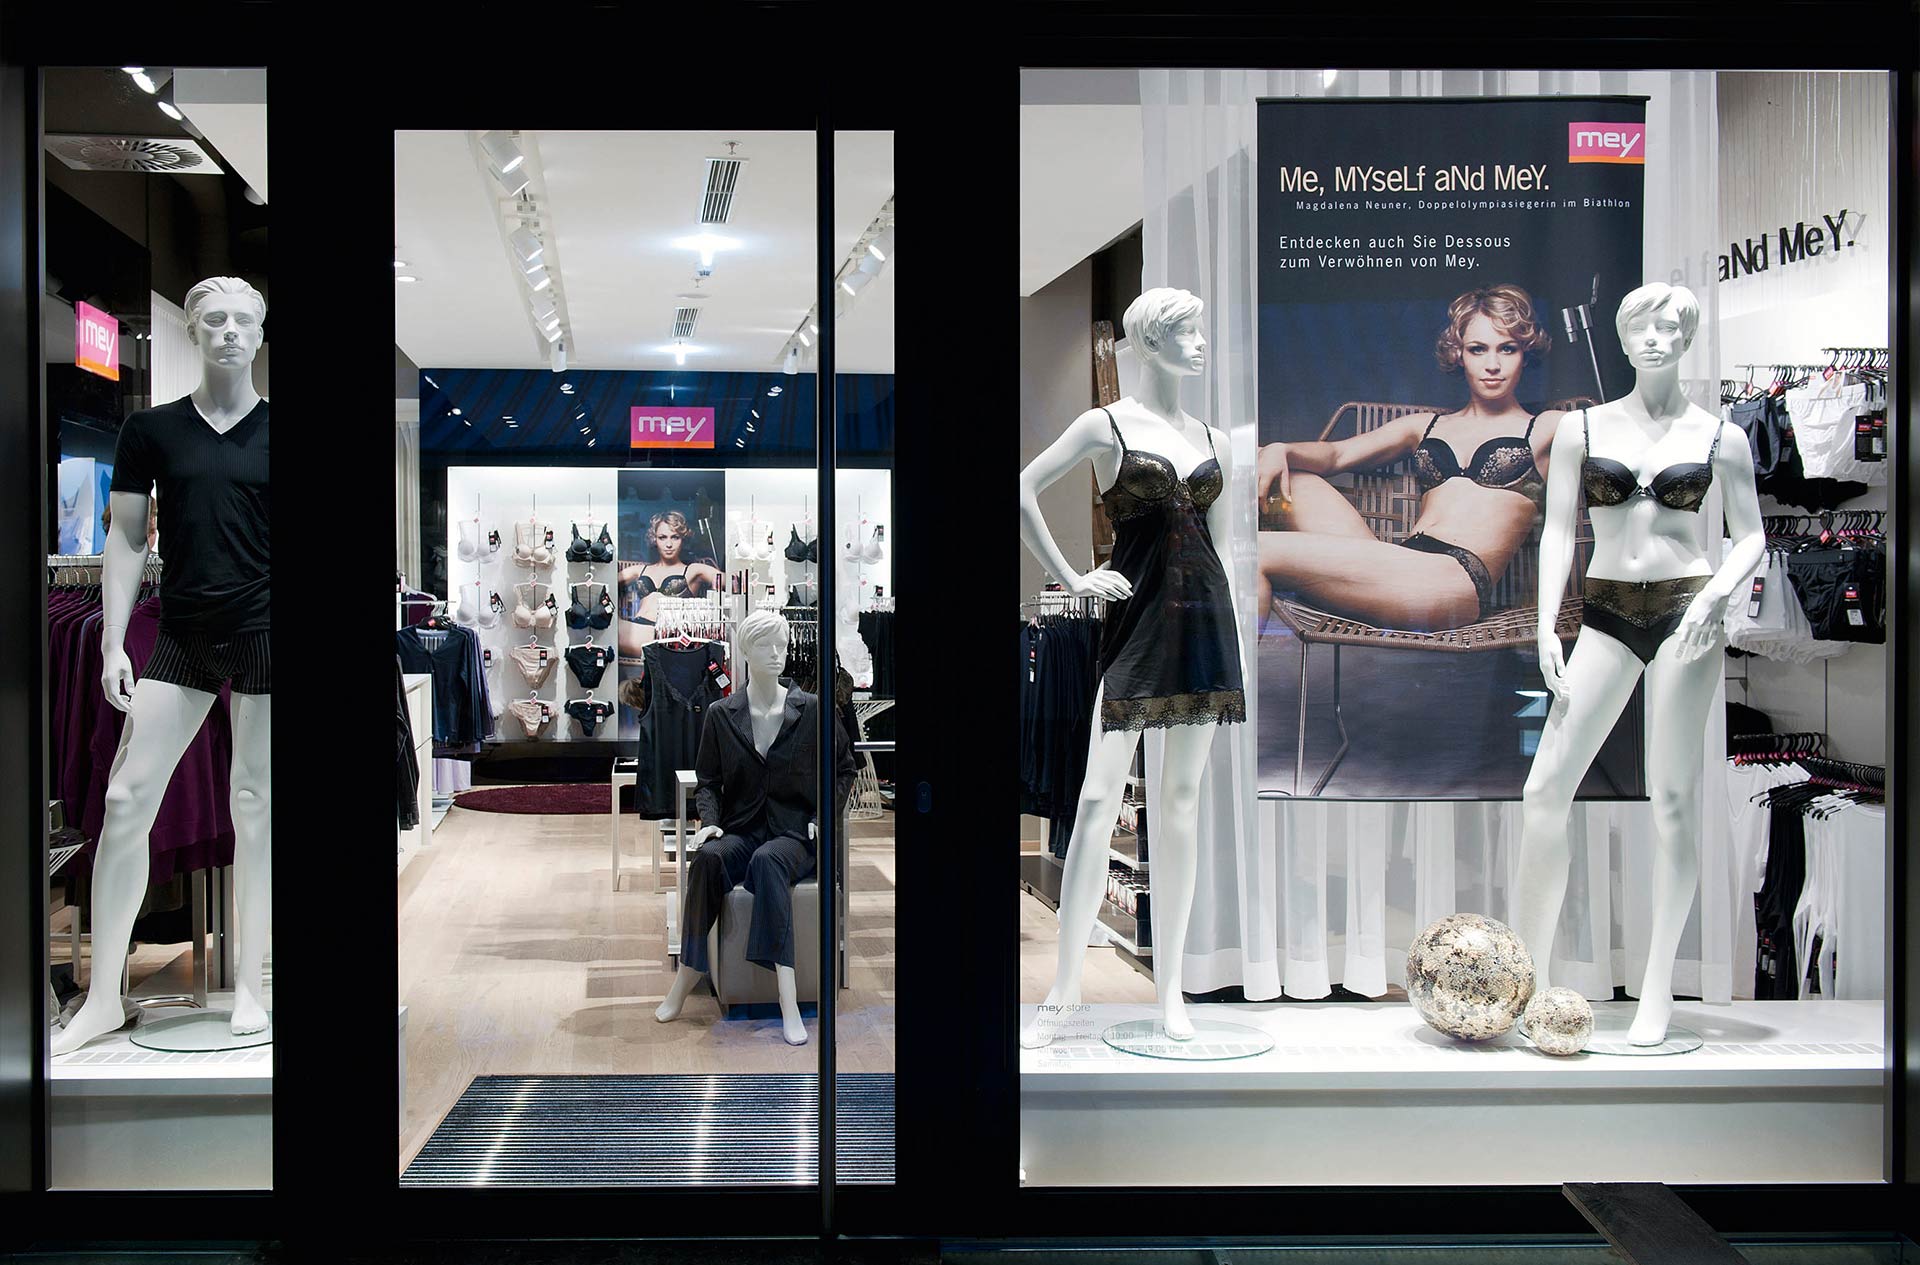 Store in Wiesbaden, Aufnahme von Außen, die Eingangstüre, Schaufensterpuppen und ein mey Werbeplakat im Vordergrund | mey® 